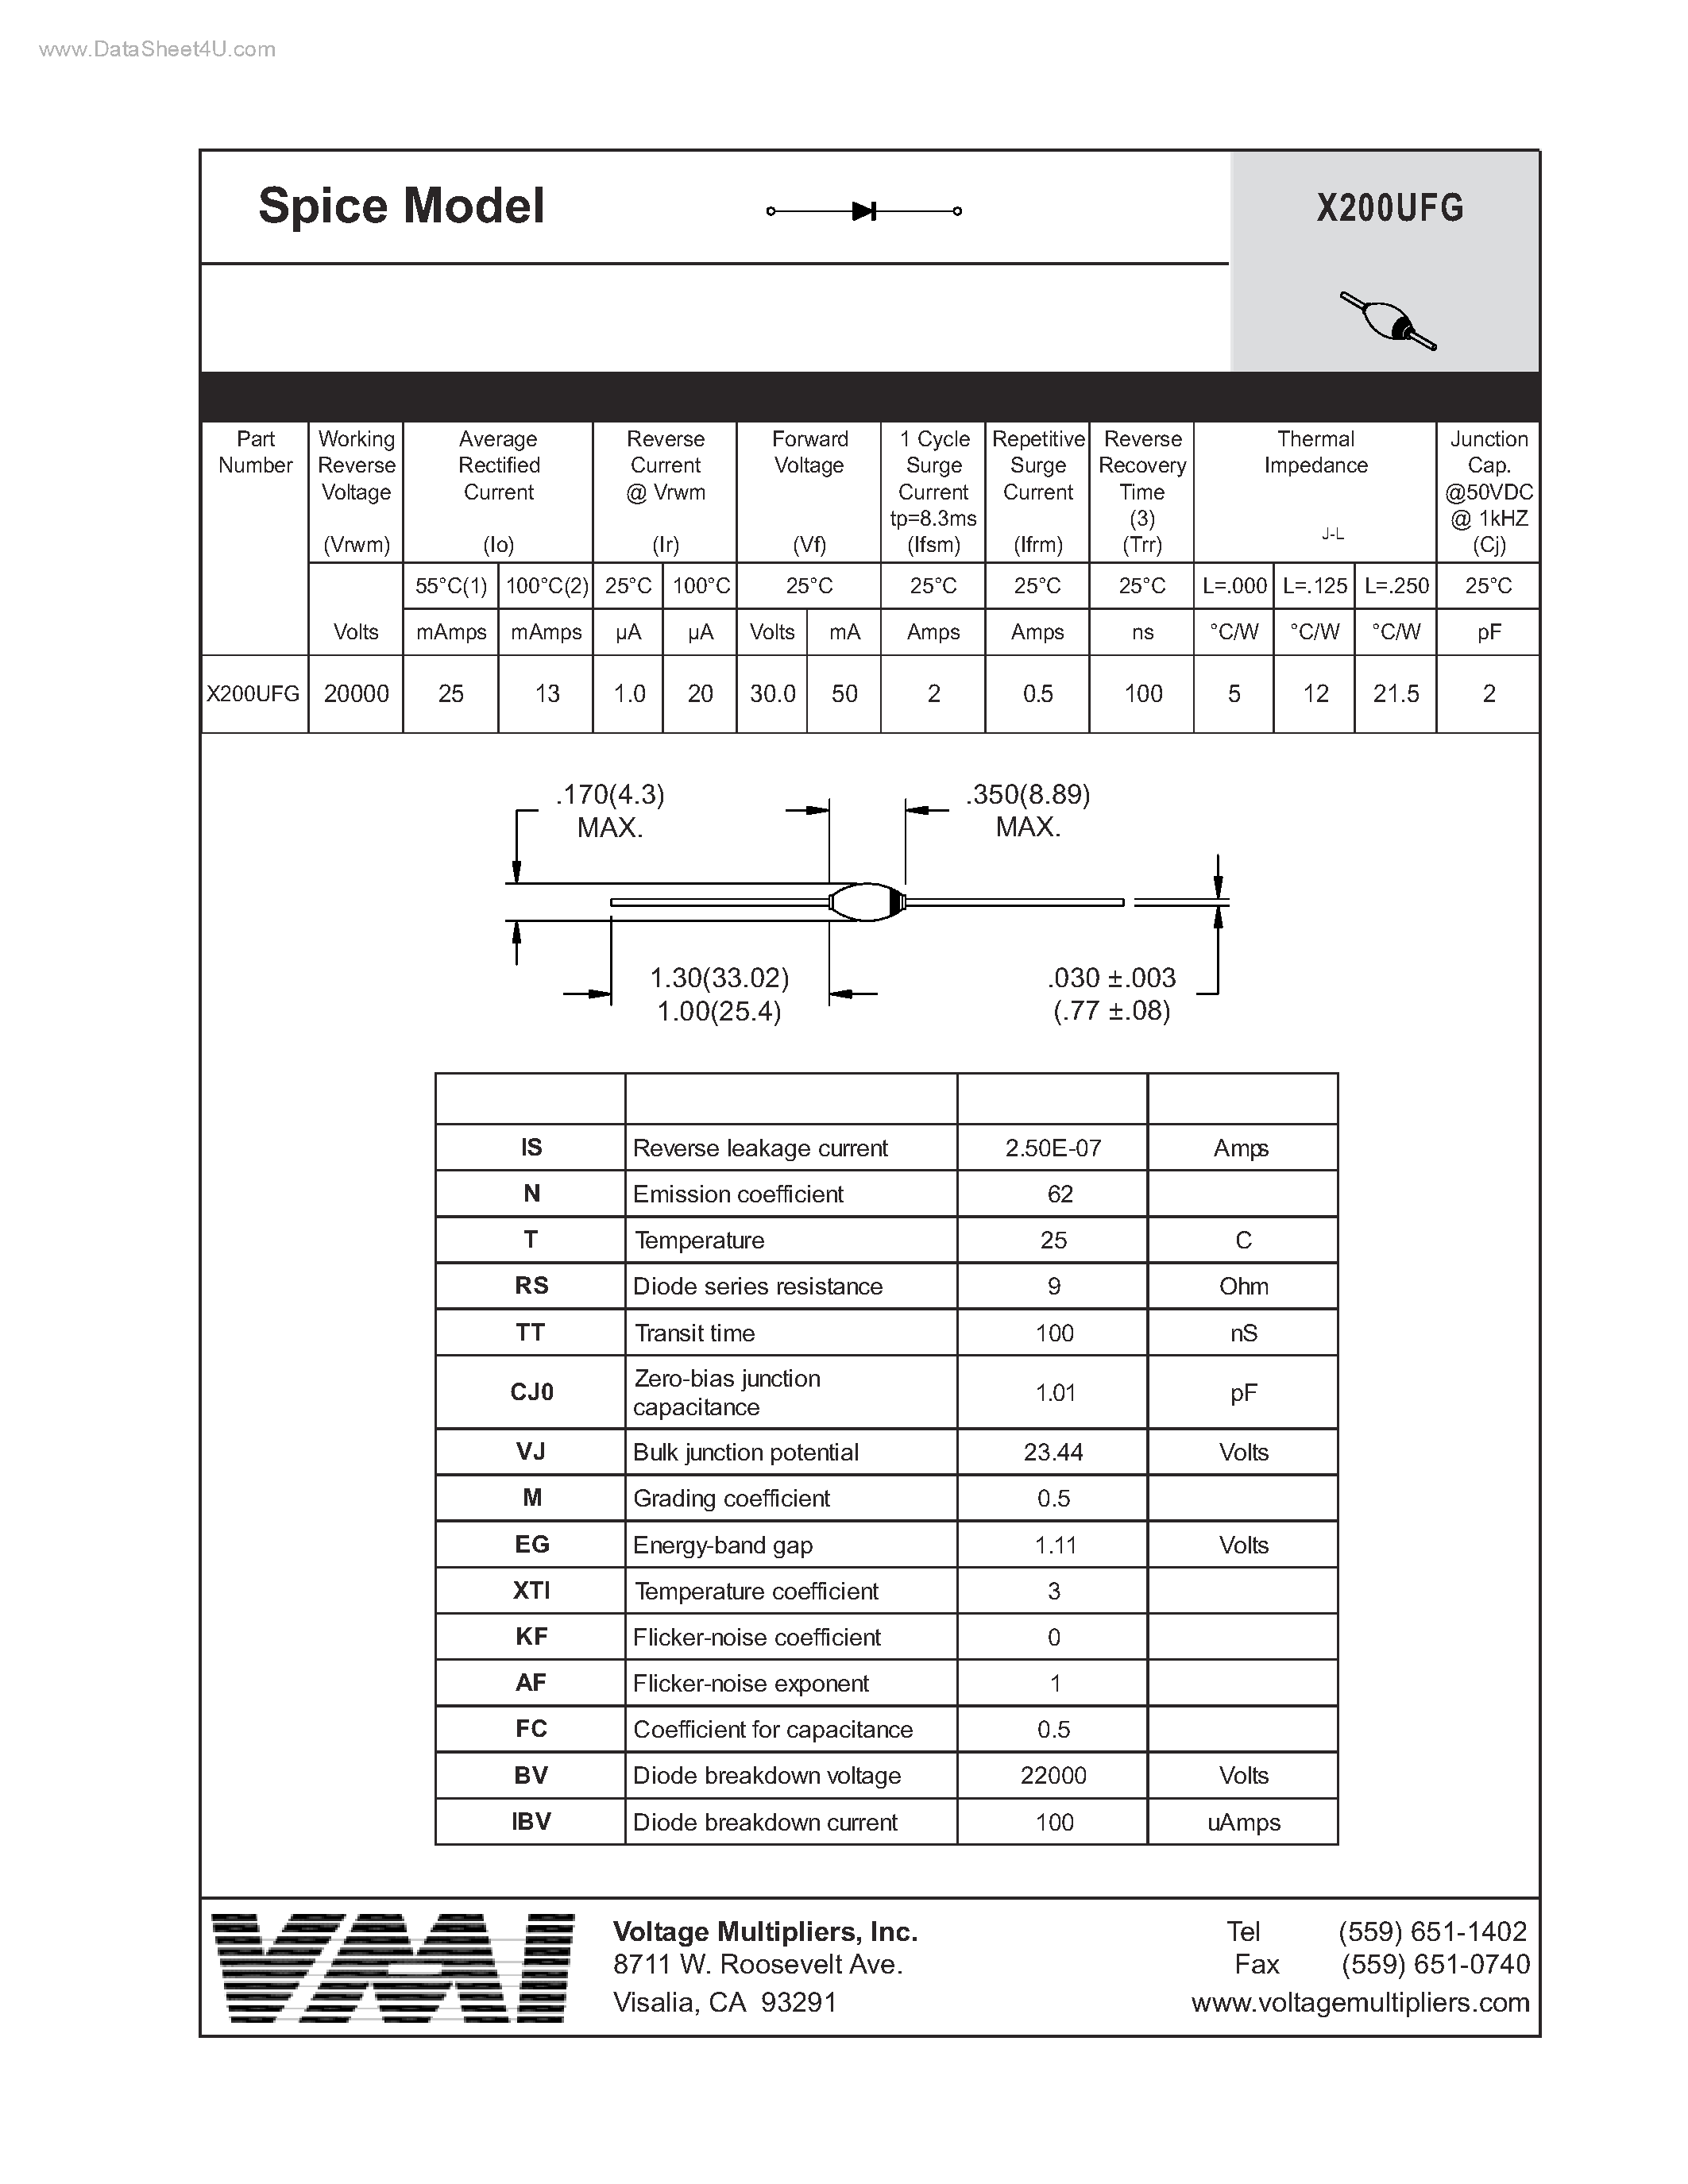 Datasheet X200UFG - Spice Model page 1